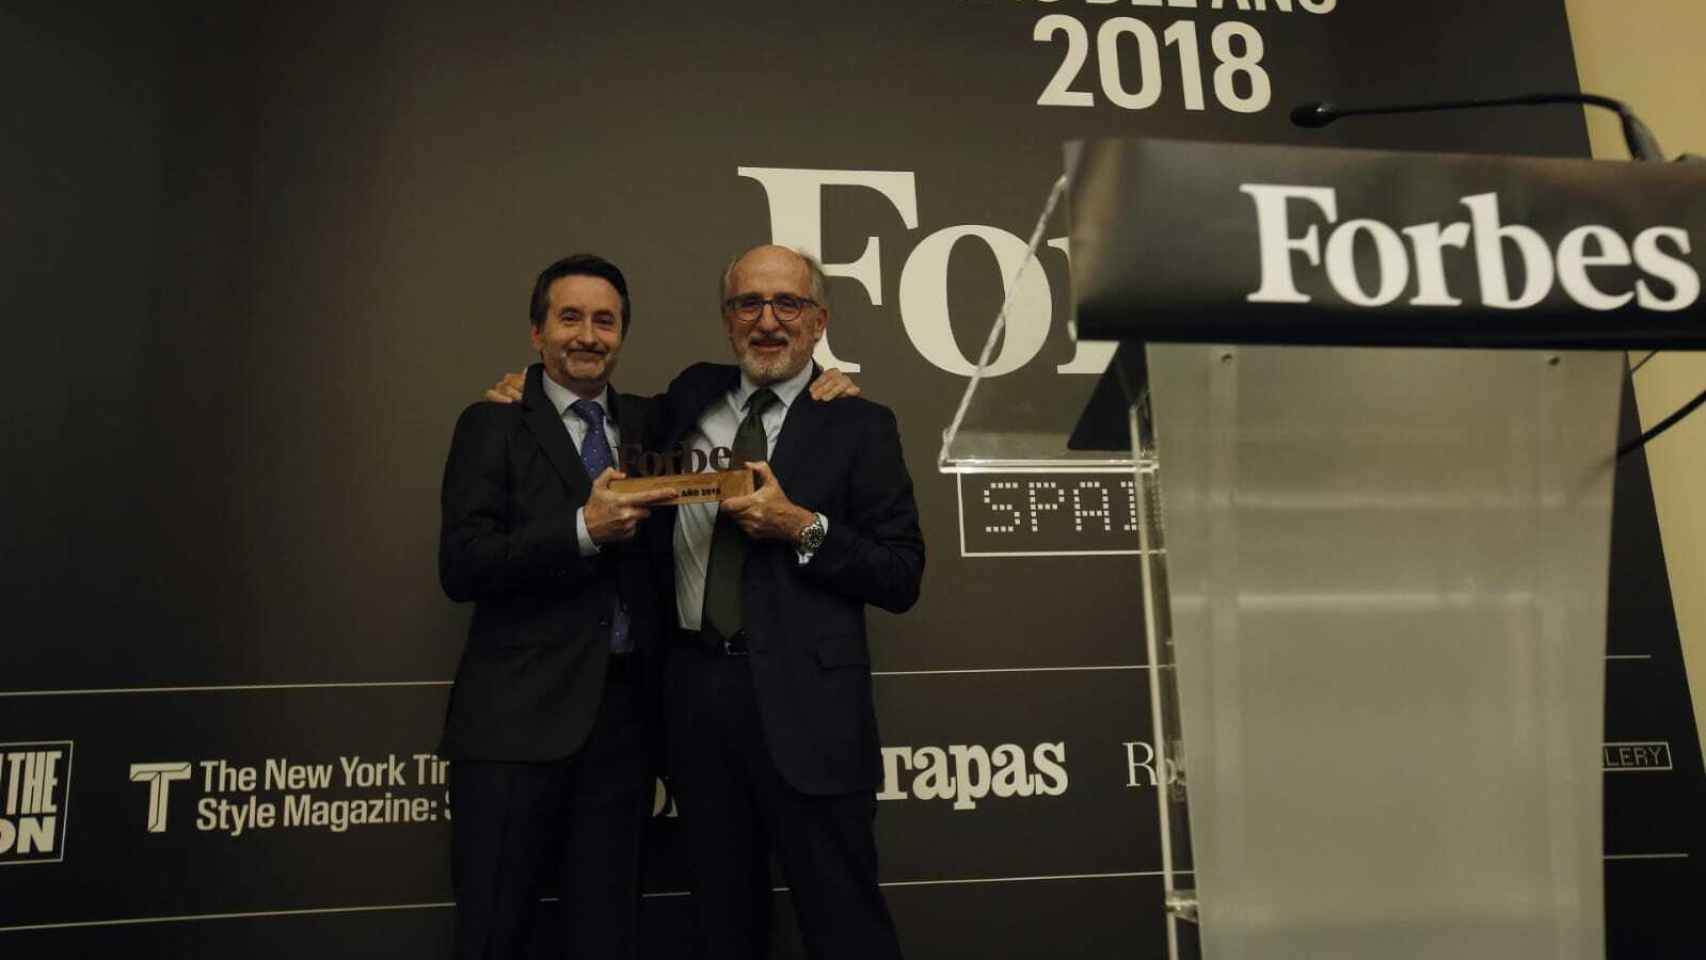 El CEO de Repsol, Josu Jon Imaz, recibe el galardón de la mano del presidente de la compañía, Antonio Brufau.